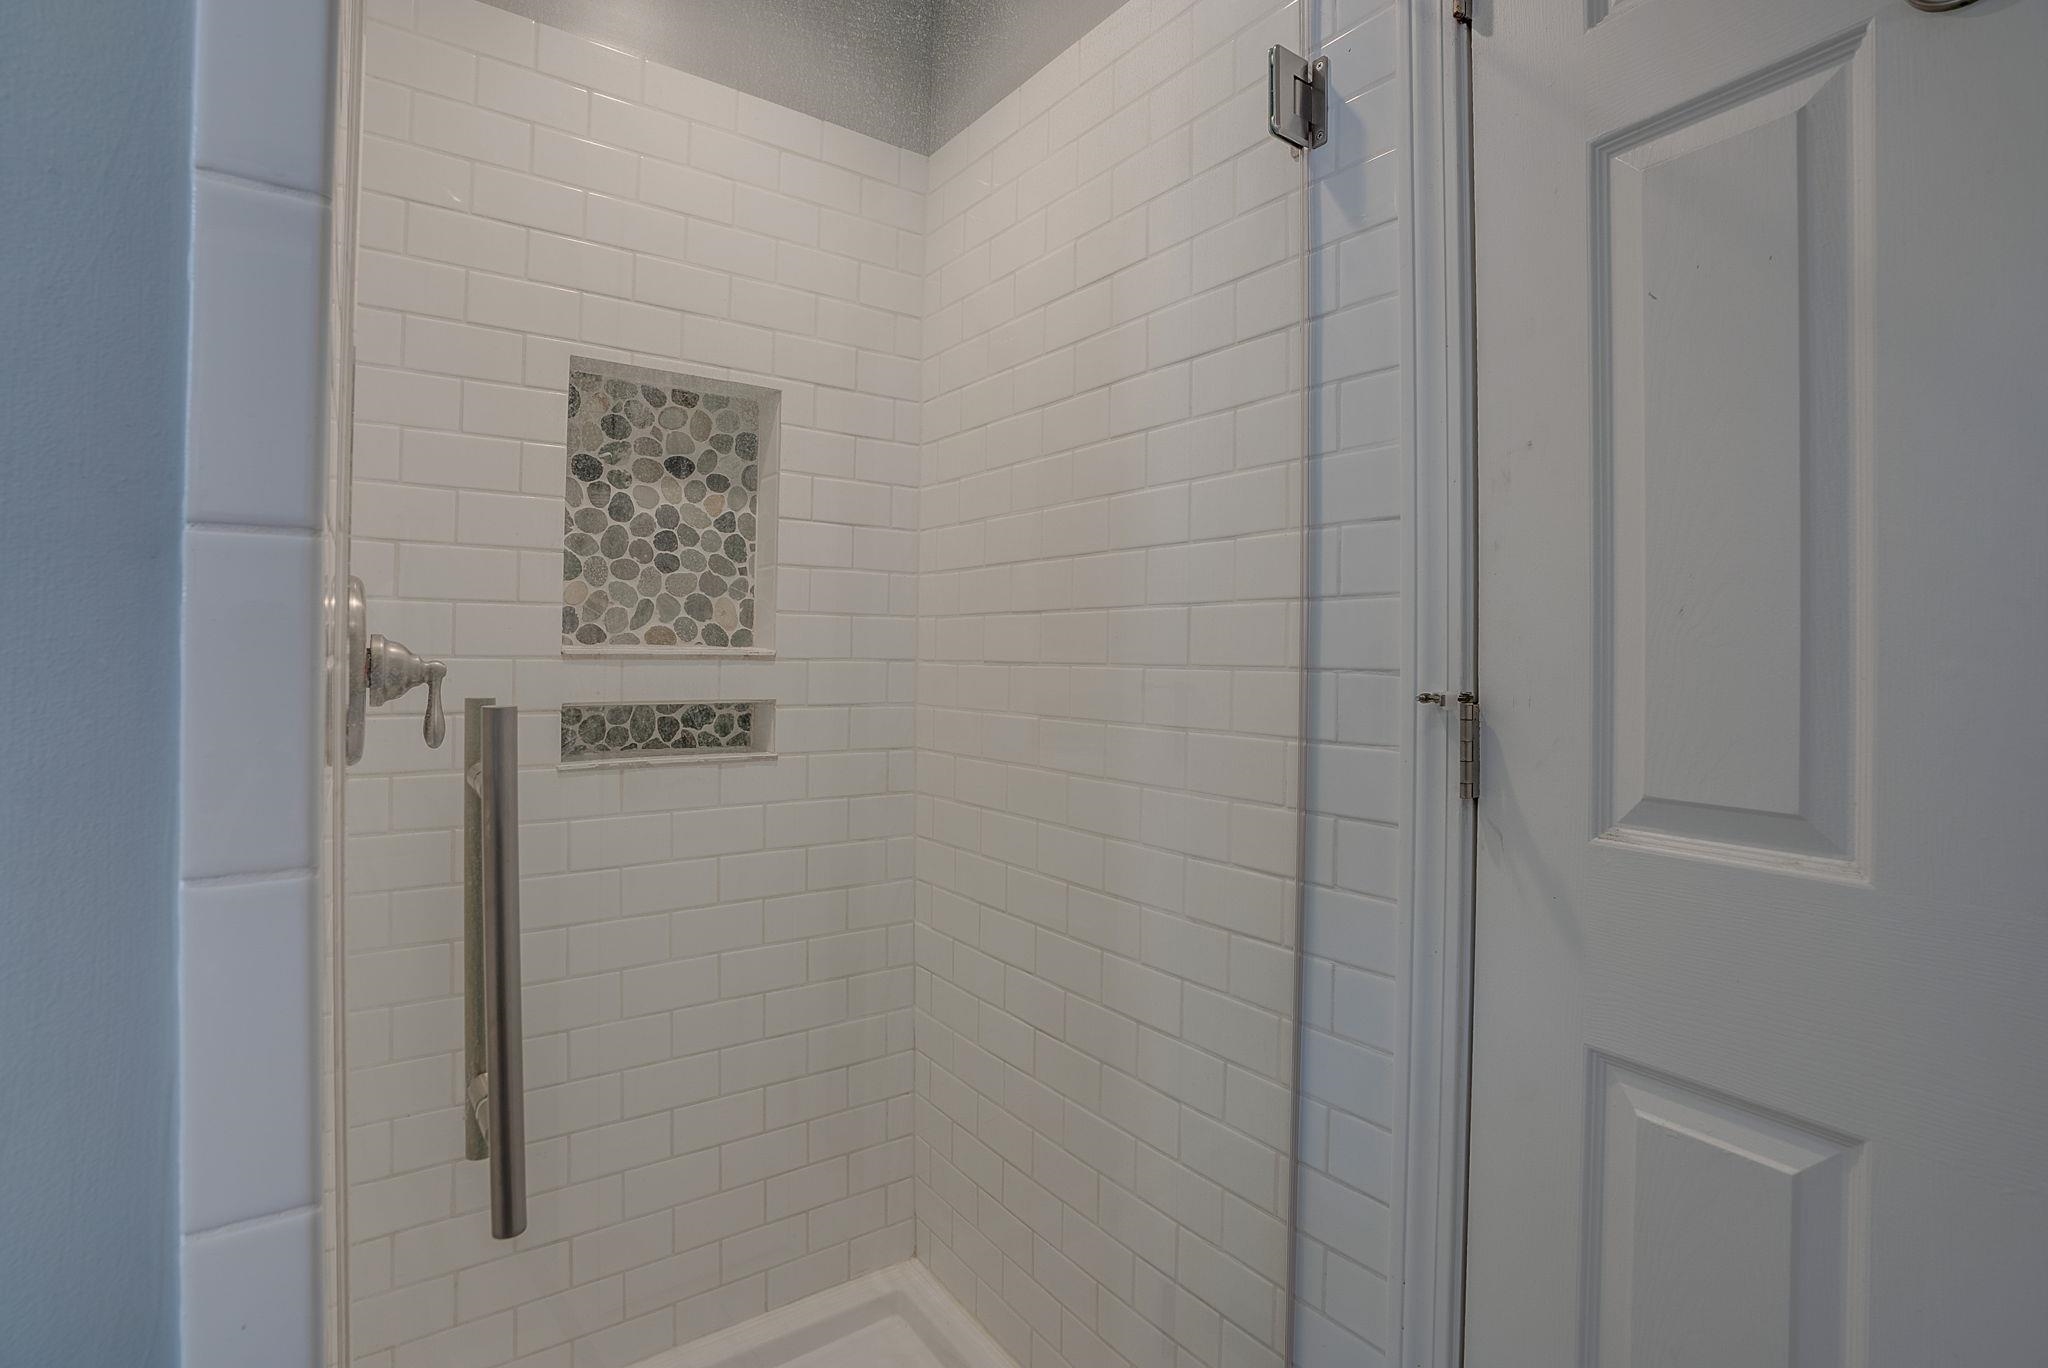 Tile Shower in 3/4 Bath on 1st Floor